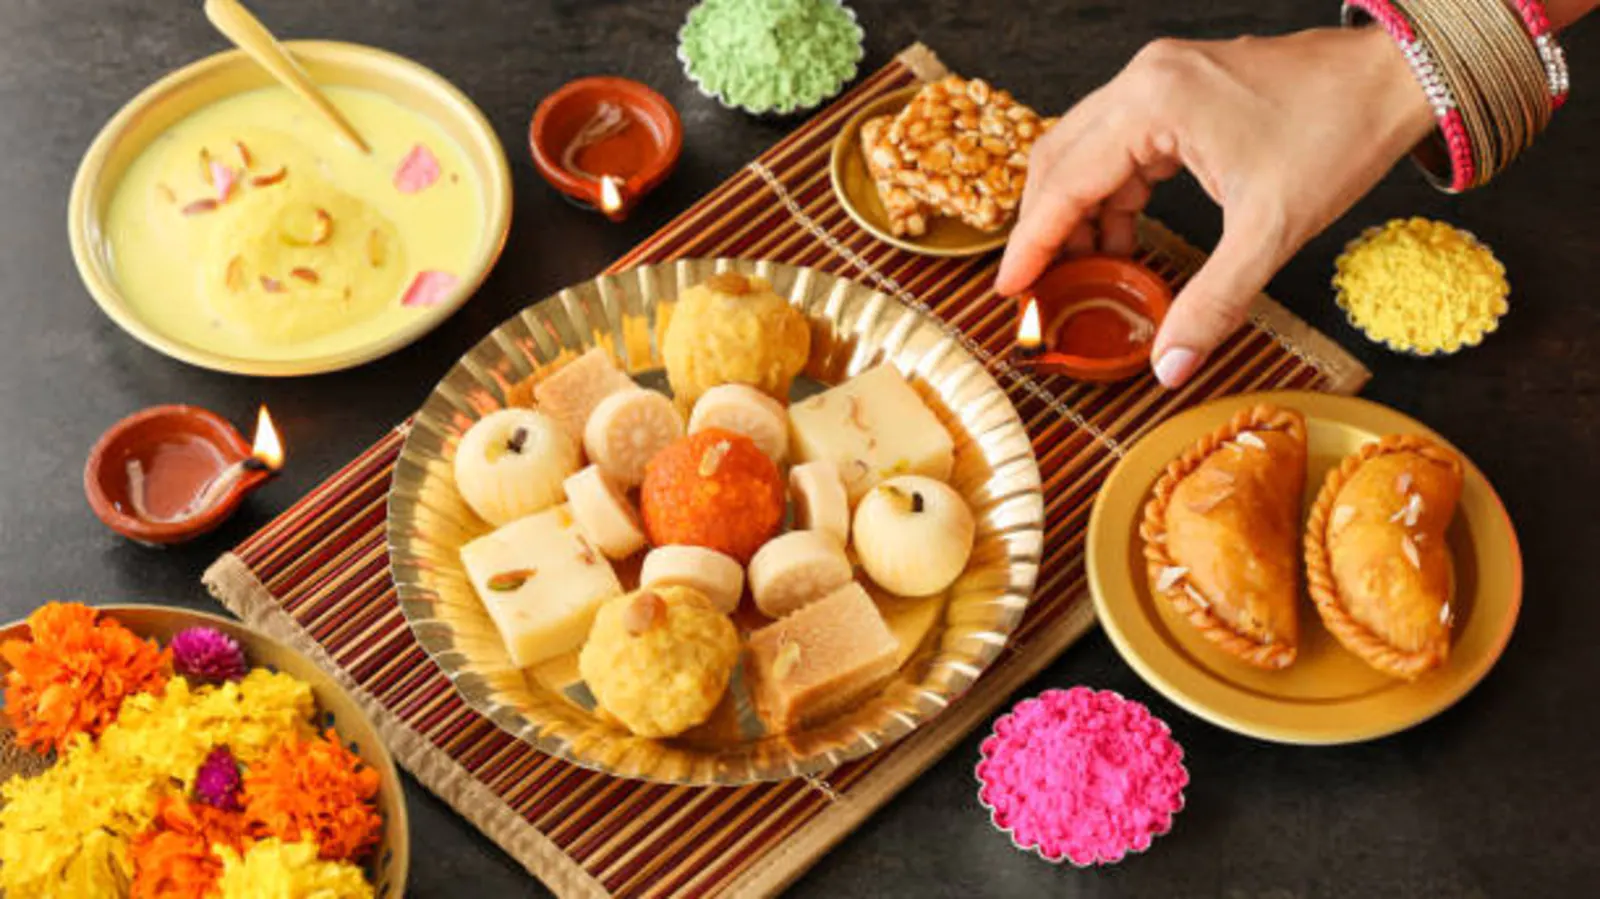 इस नवरात्रि के त्योहार को कुछ इस तरह से बनाएं खास, ट्राई करें ये स्वादिष्ट रेसिपी